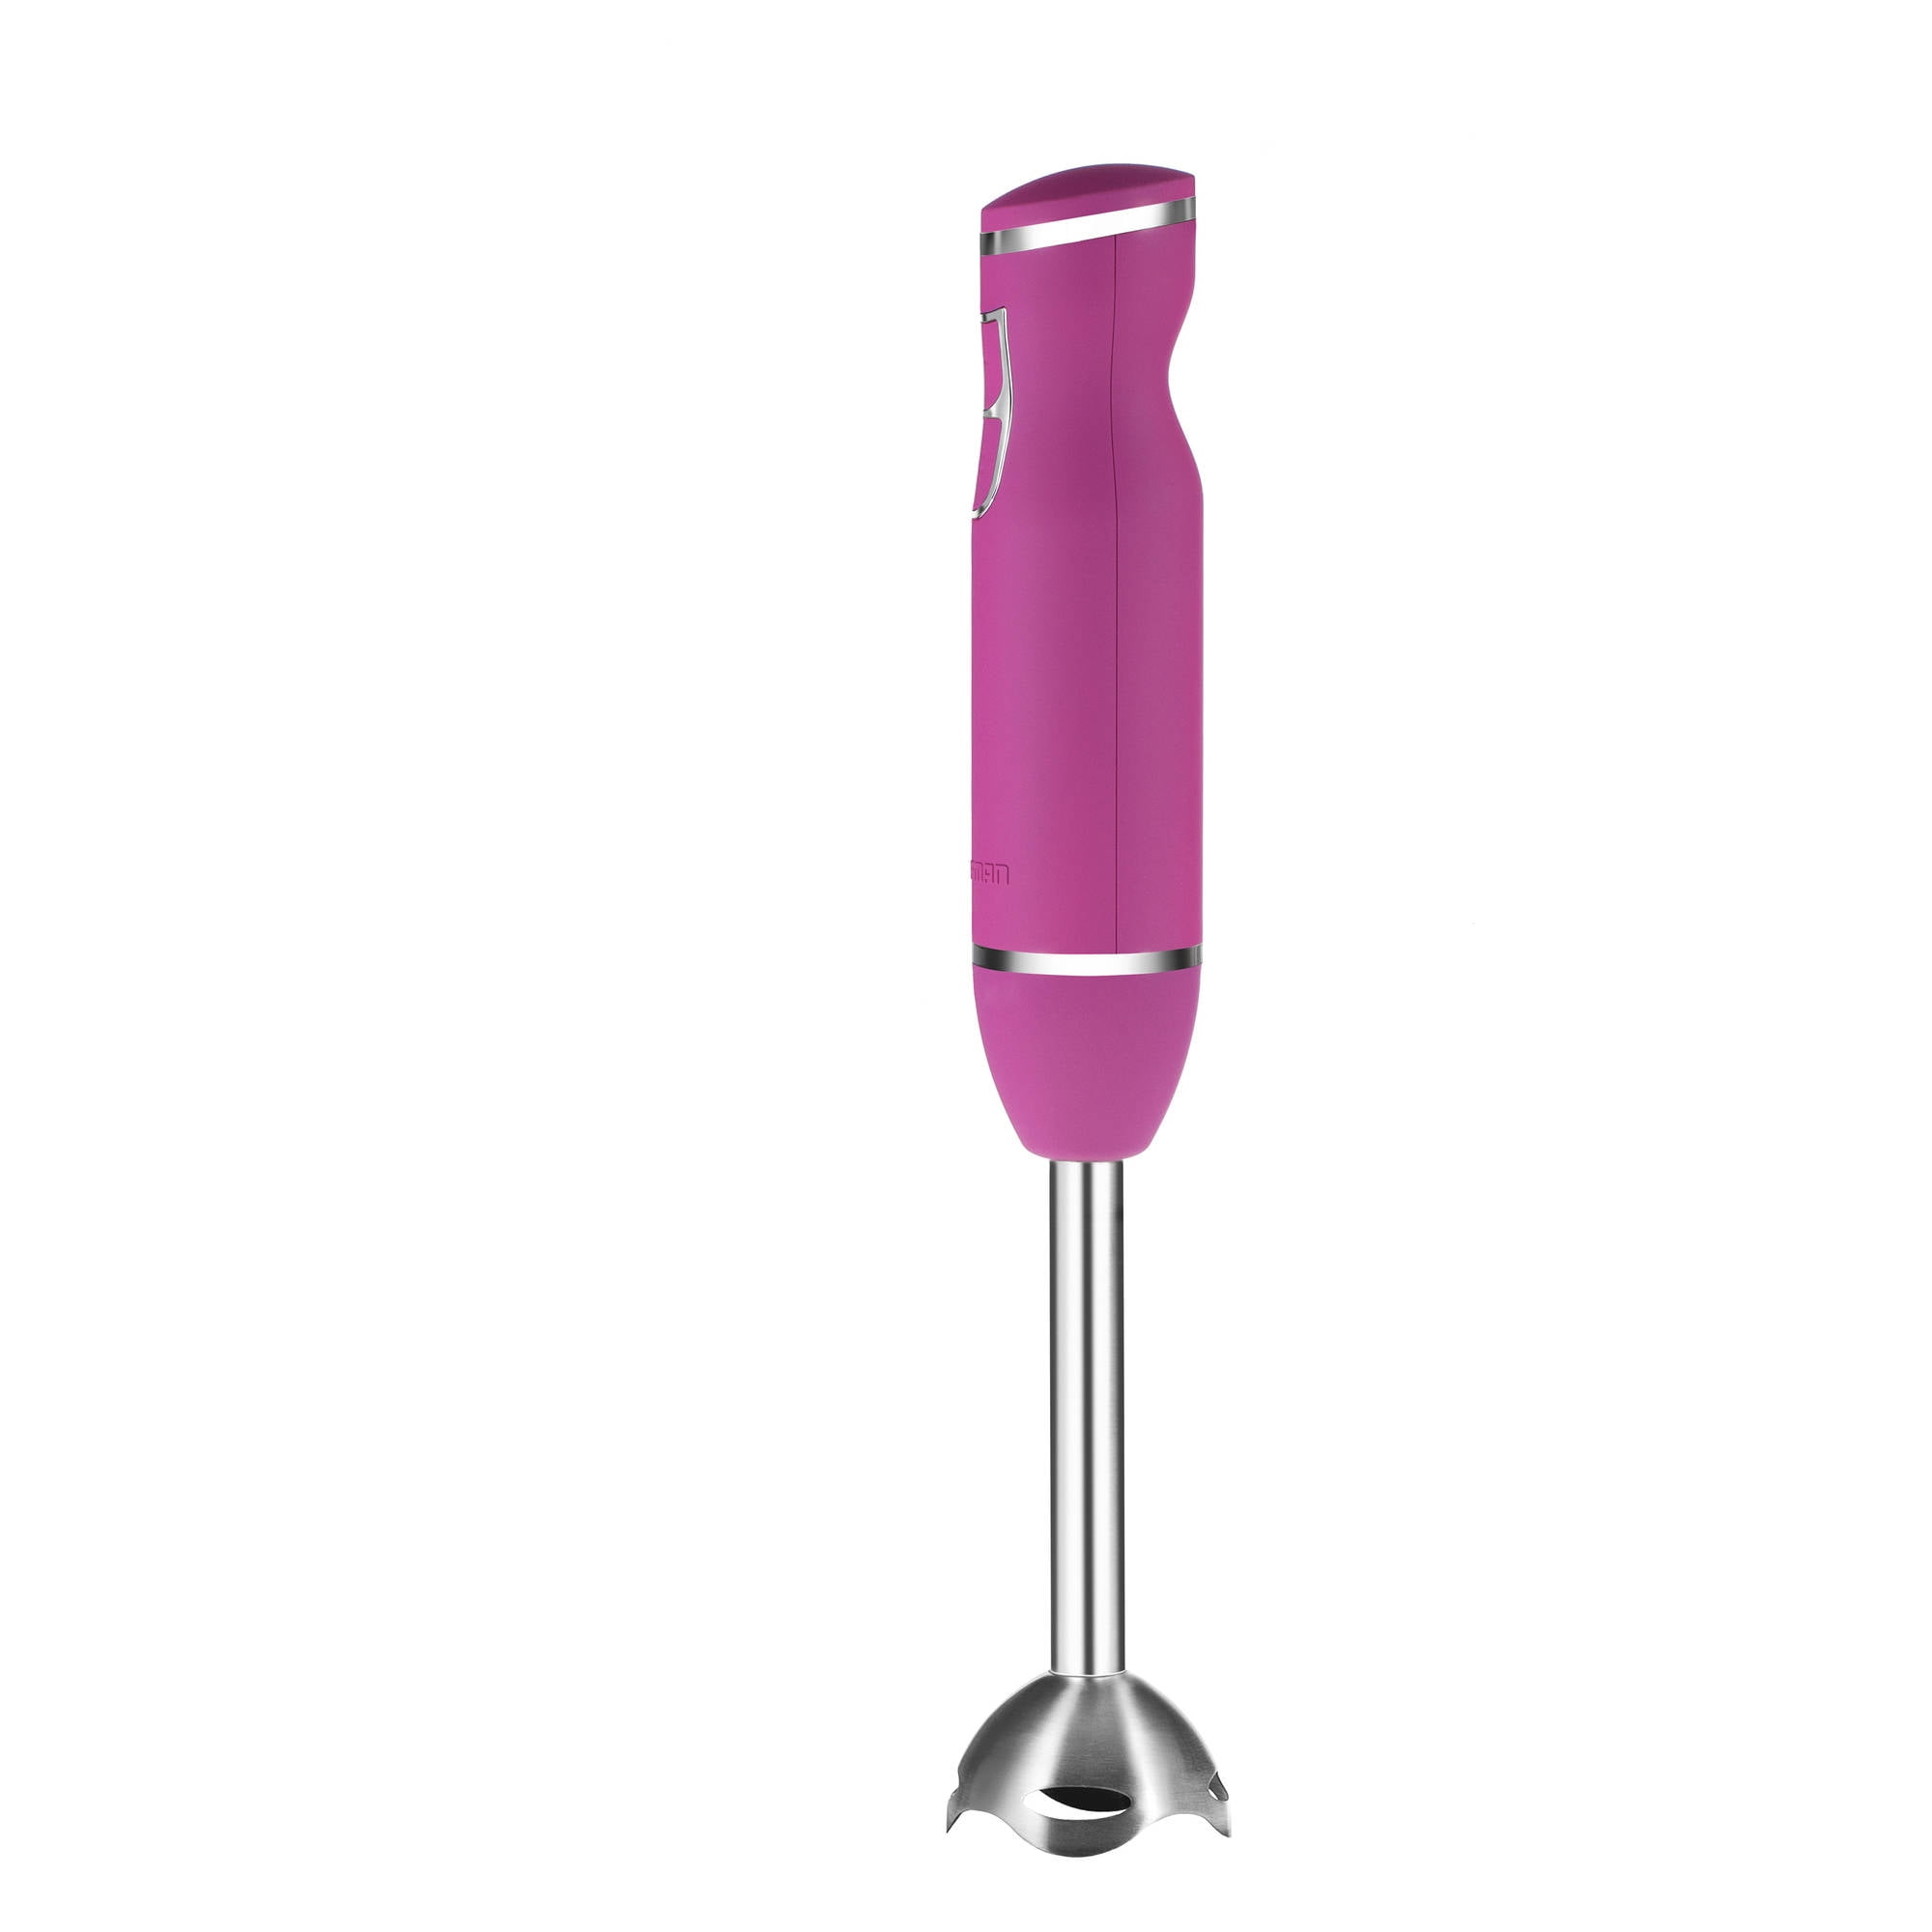 Chefman Immersion Stick Hand Blender, Stainless Steel Blade, 300W, Pastel  Pink 